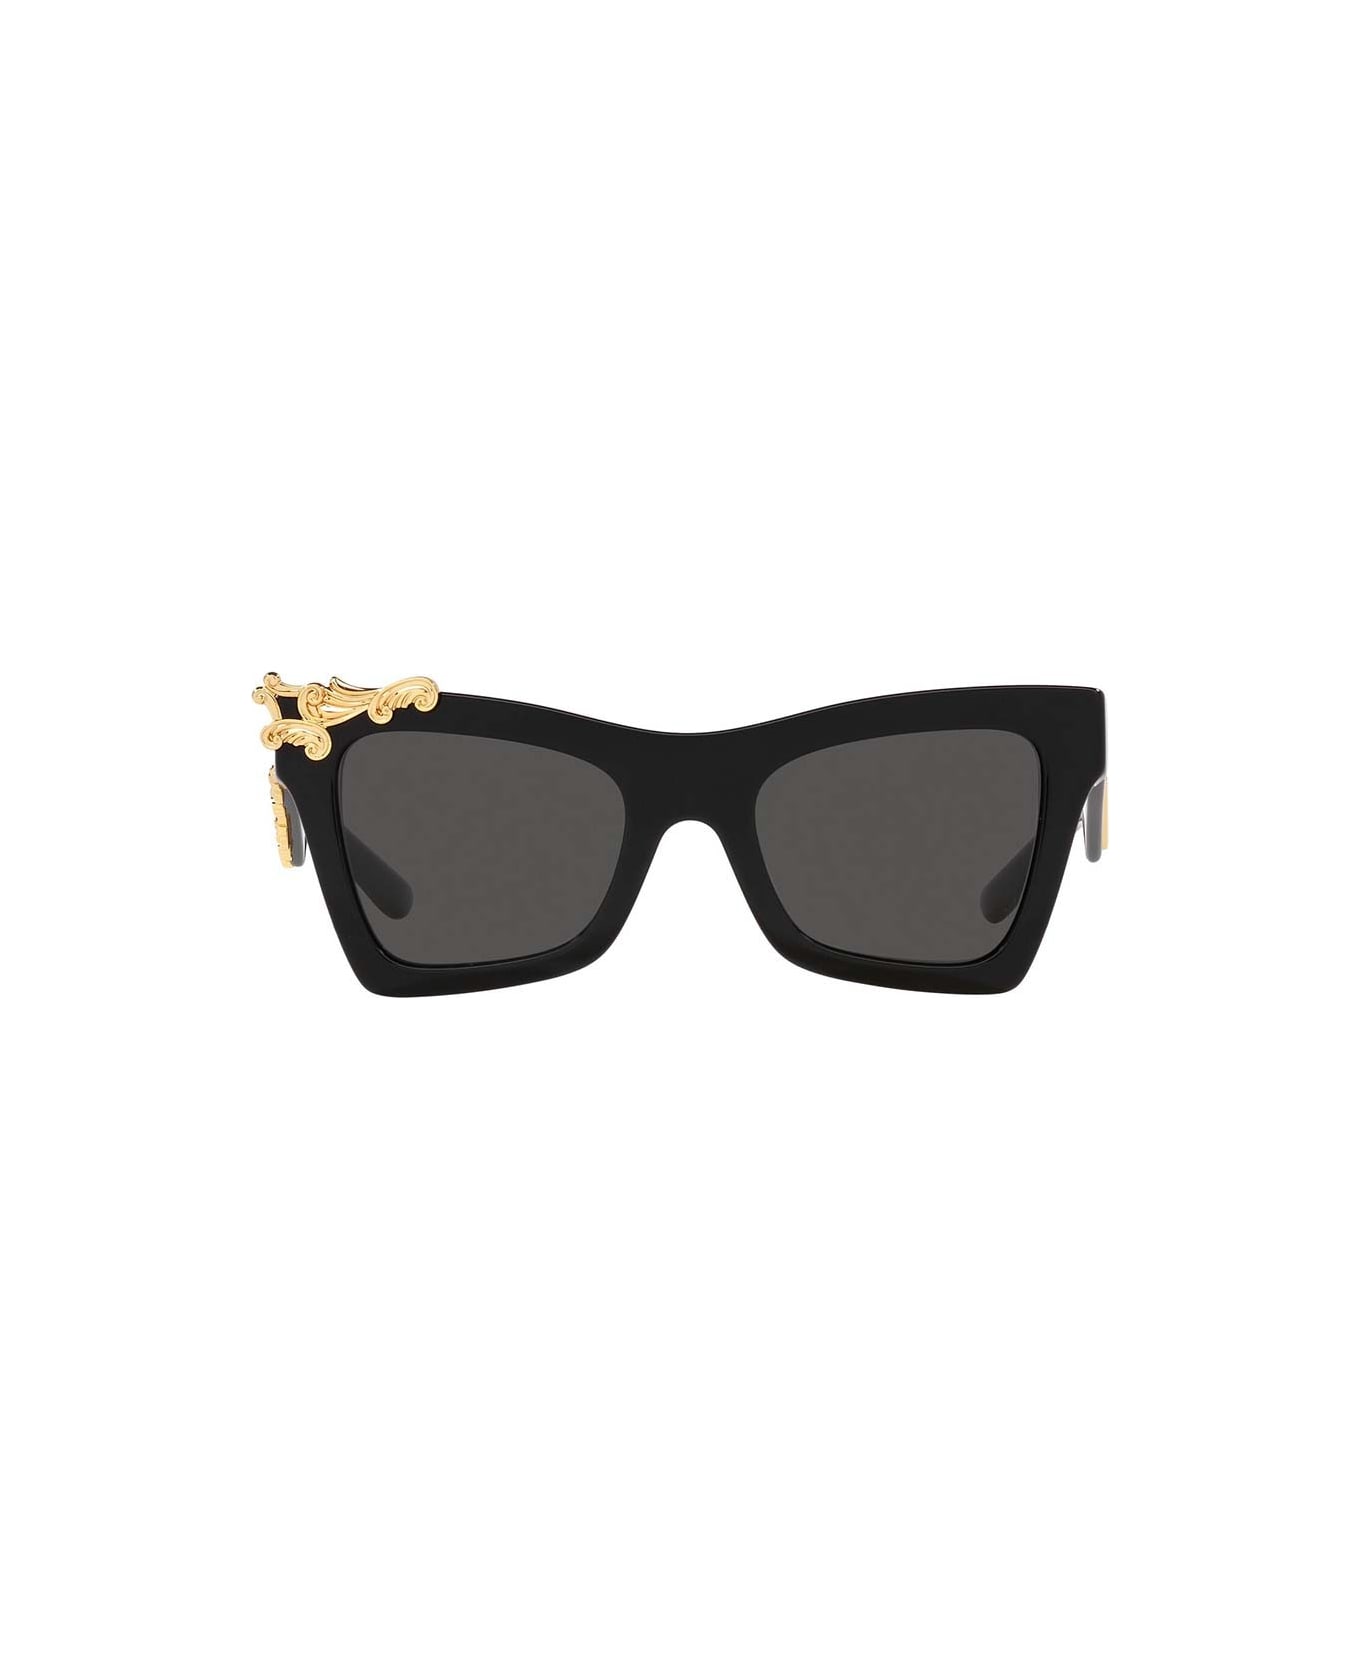 Pittsburgh Steelers Sunglasses Eyewear Microbag Eyewear Sunglasses Eyewear - Nero/Grigio